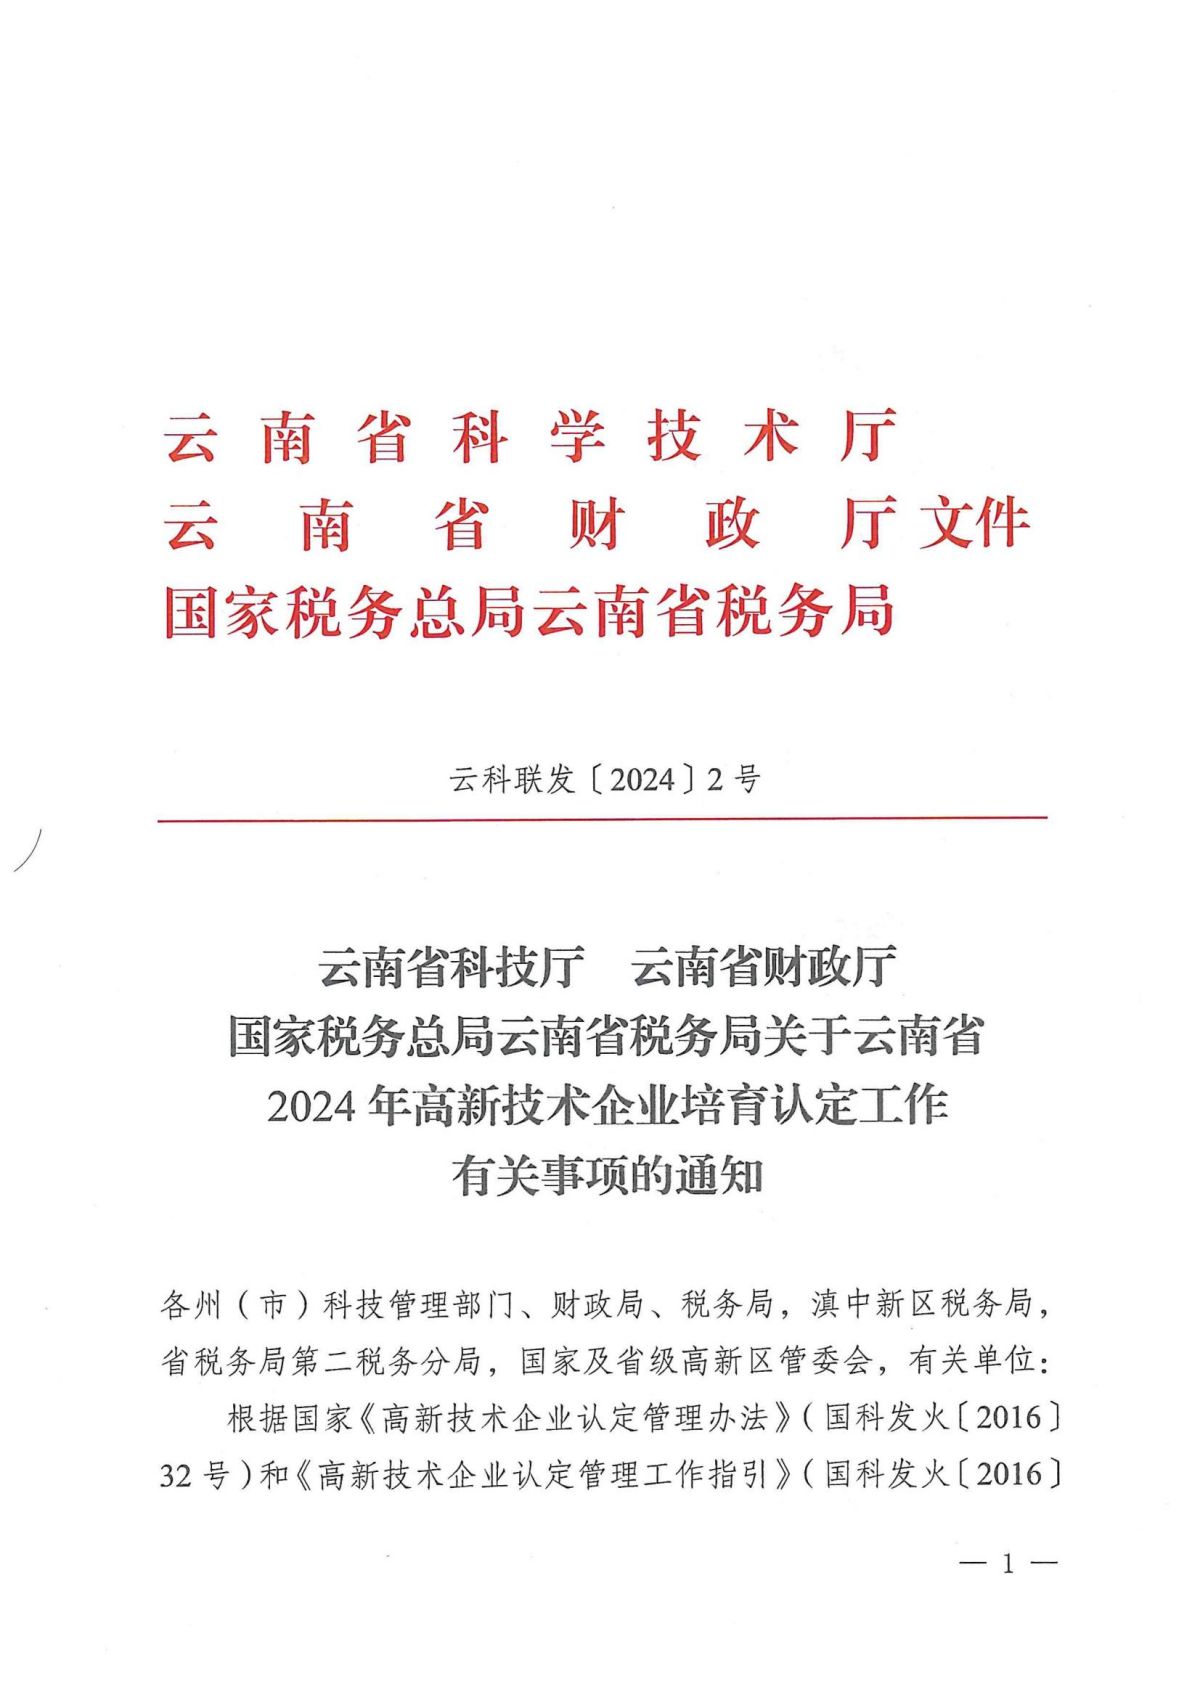 附件1：关于云南省2024年高新技术企业培育认定工作有关事项的通知_00.jpg